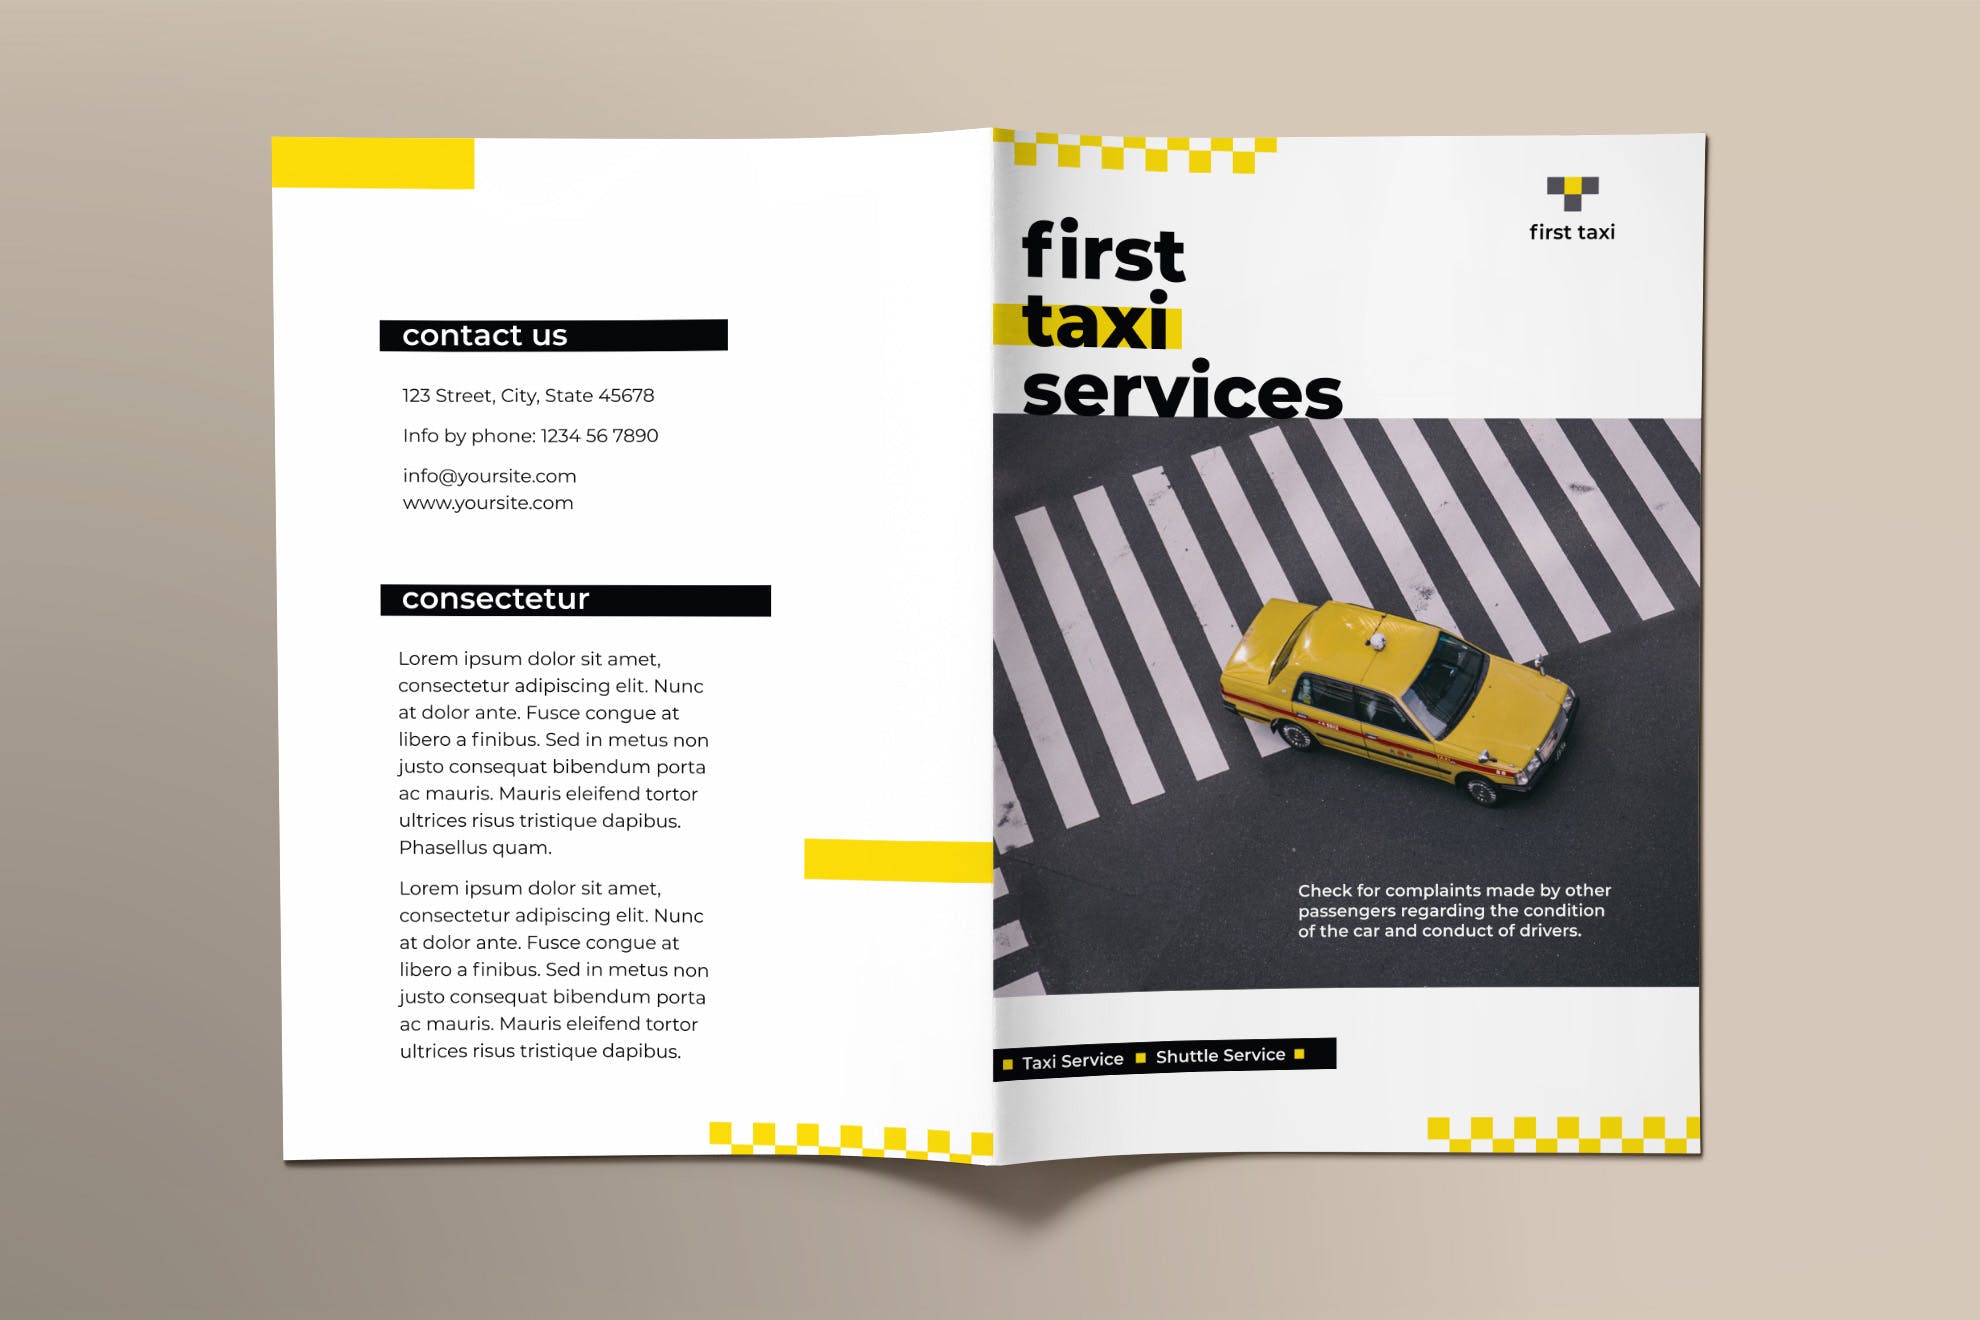 出租车/网约车服务对折宣传册设计模板 Taxi Services Brochure Bifold插图(1)